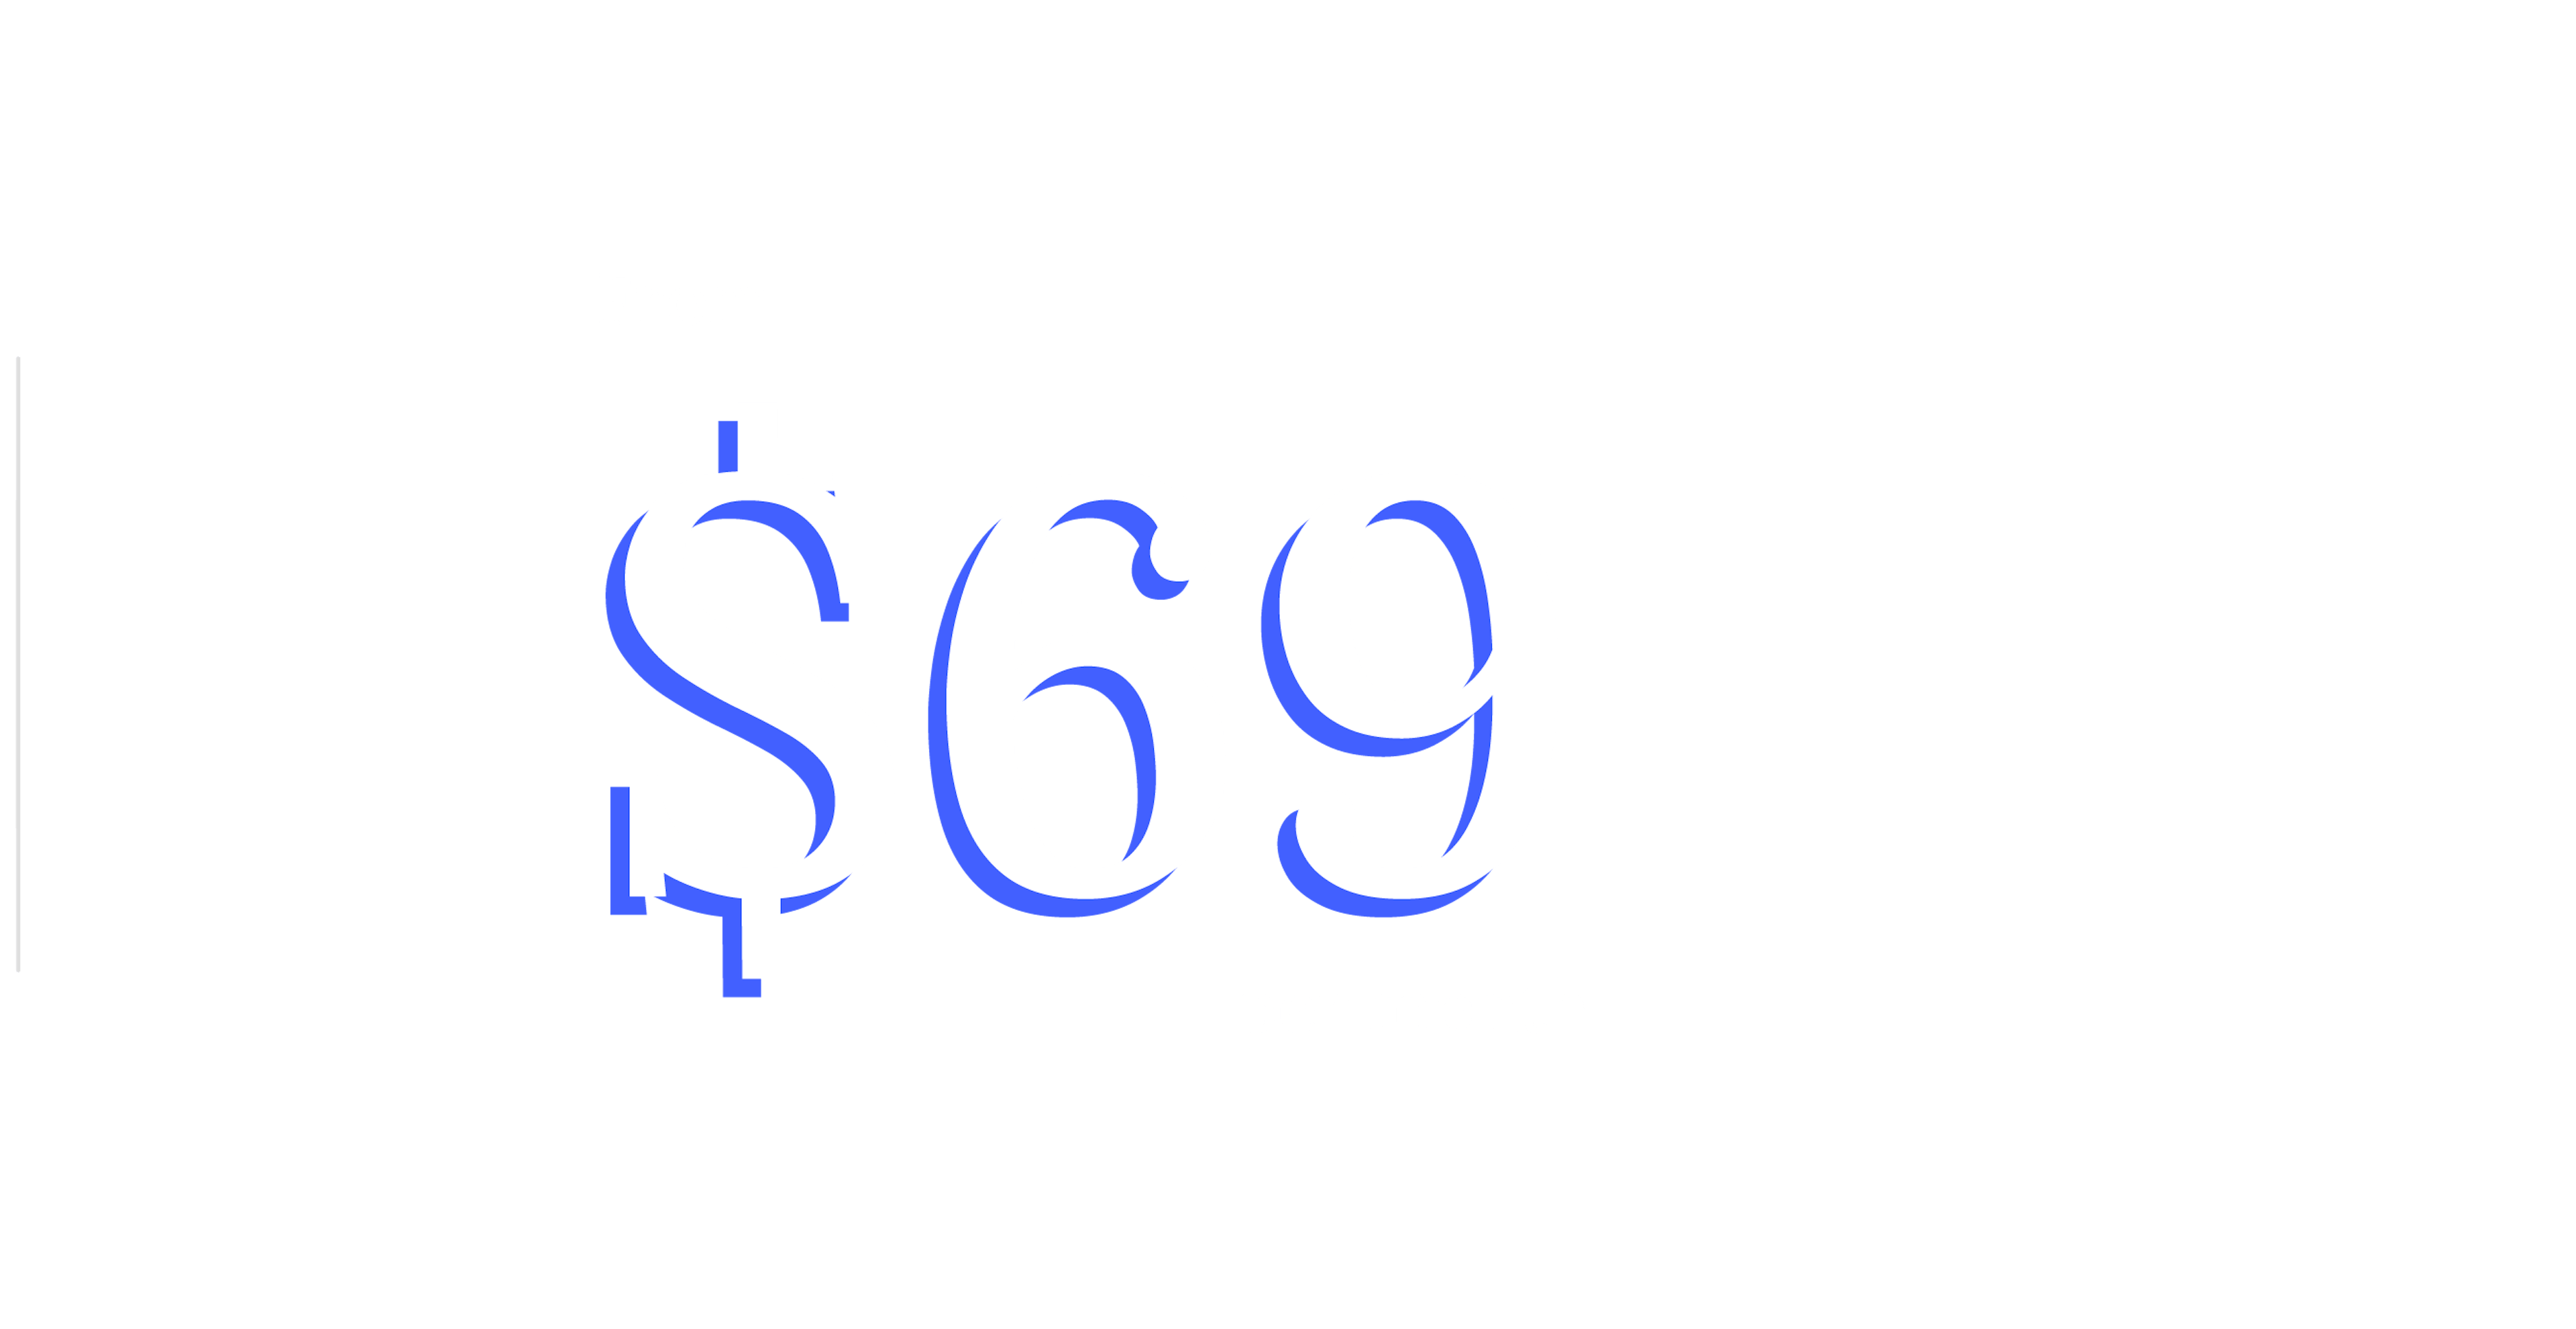 Lite plan pricing $69